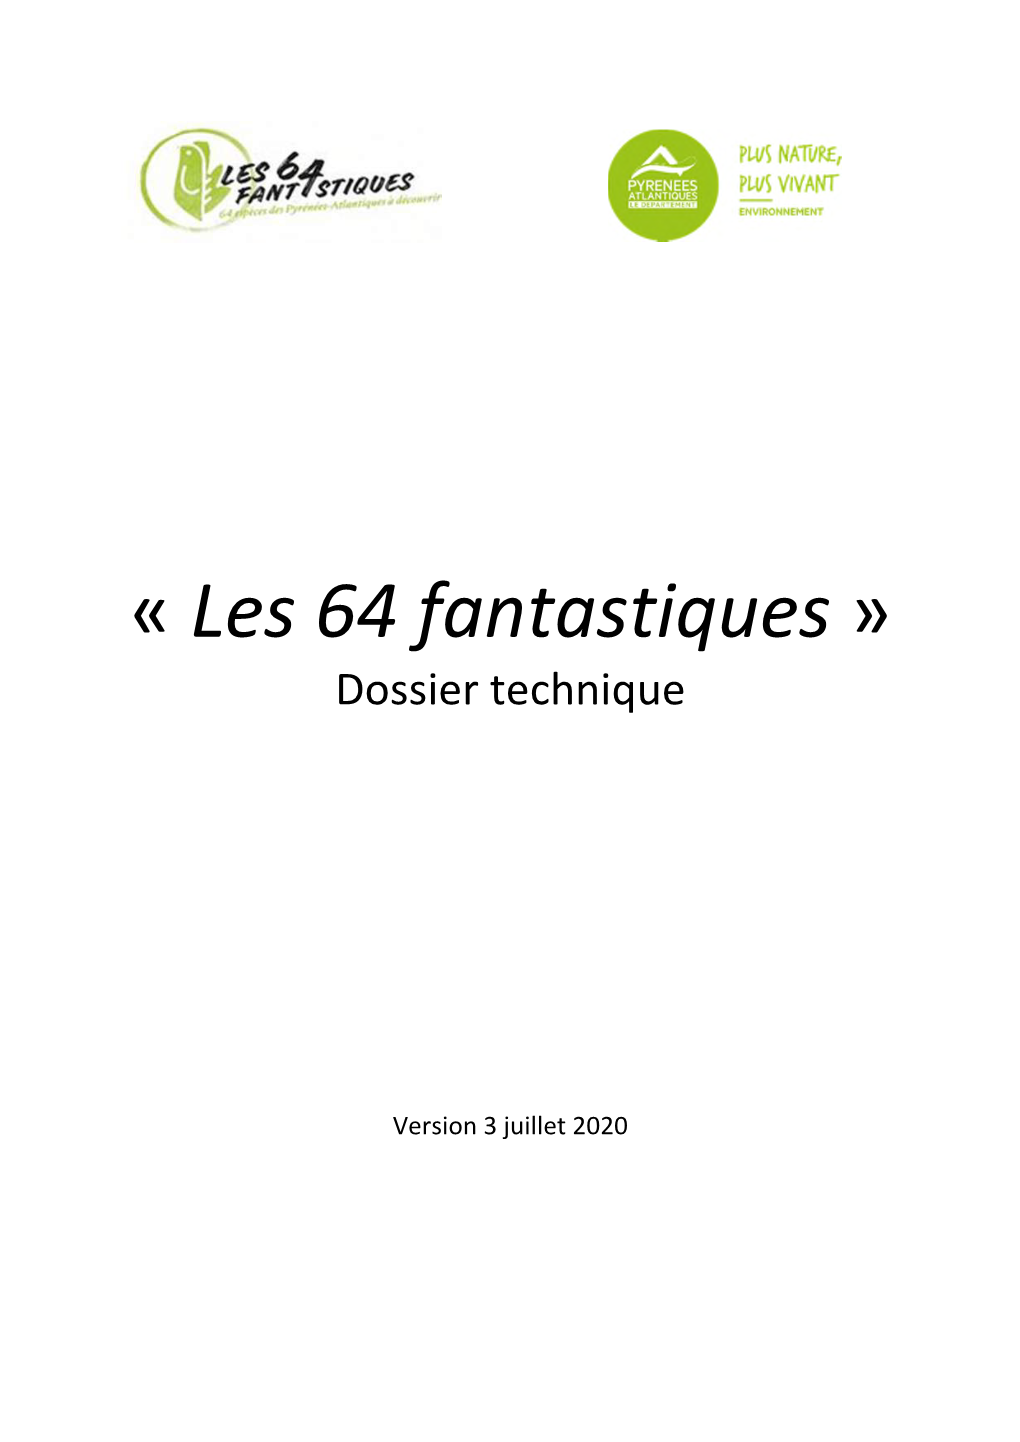 « Les 64 Fantastiques » Dossier Technique